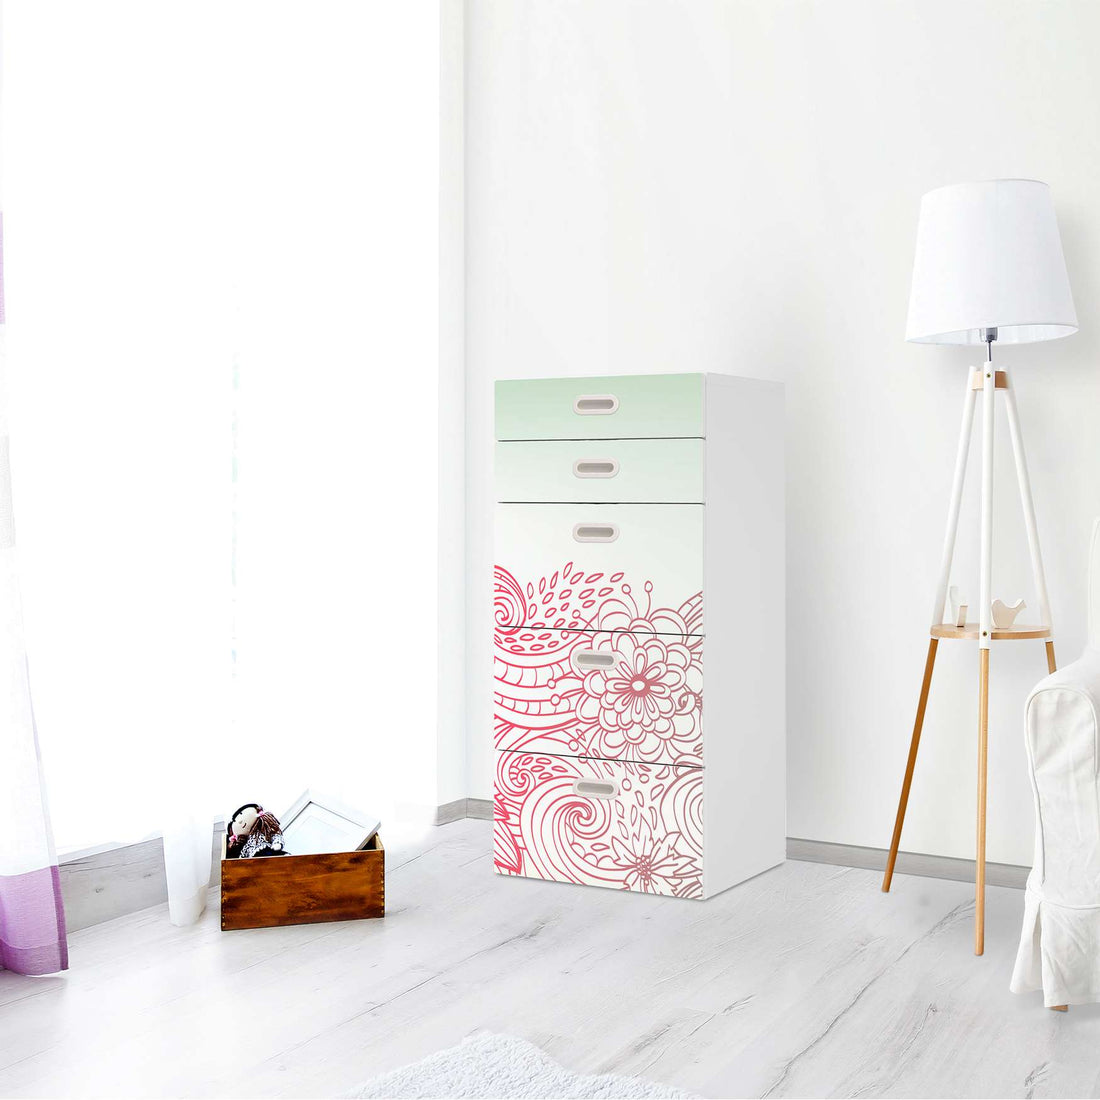 Möbel Klebefolie Floral Doodle - IKEA Stuva / Fritids Kommode - 5 Schubladen - Kinderzimmer